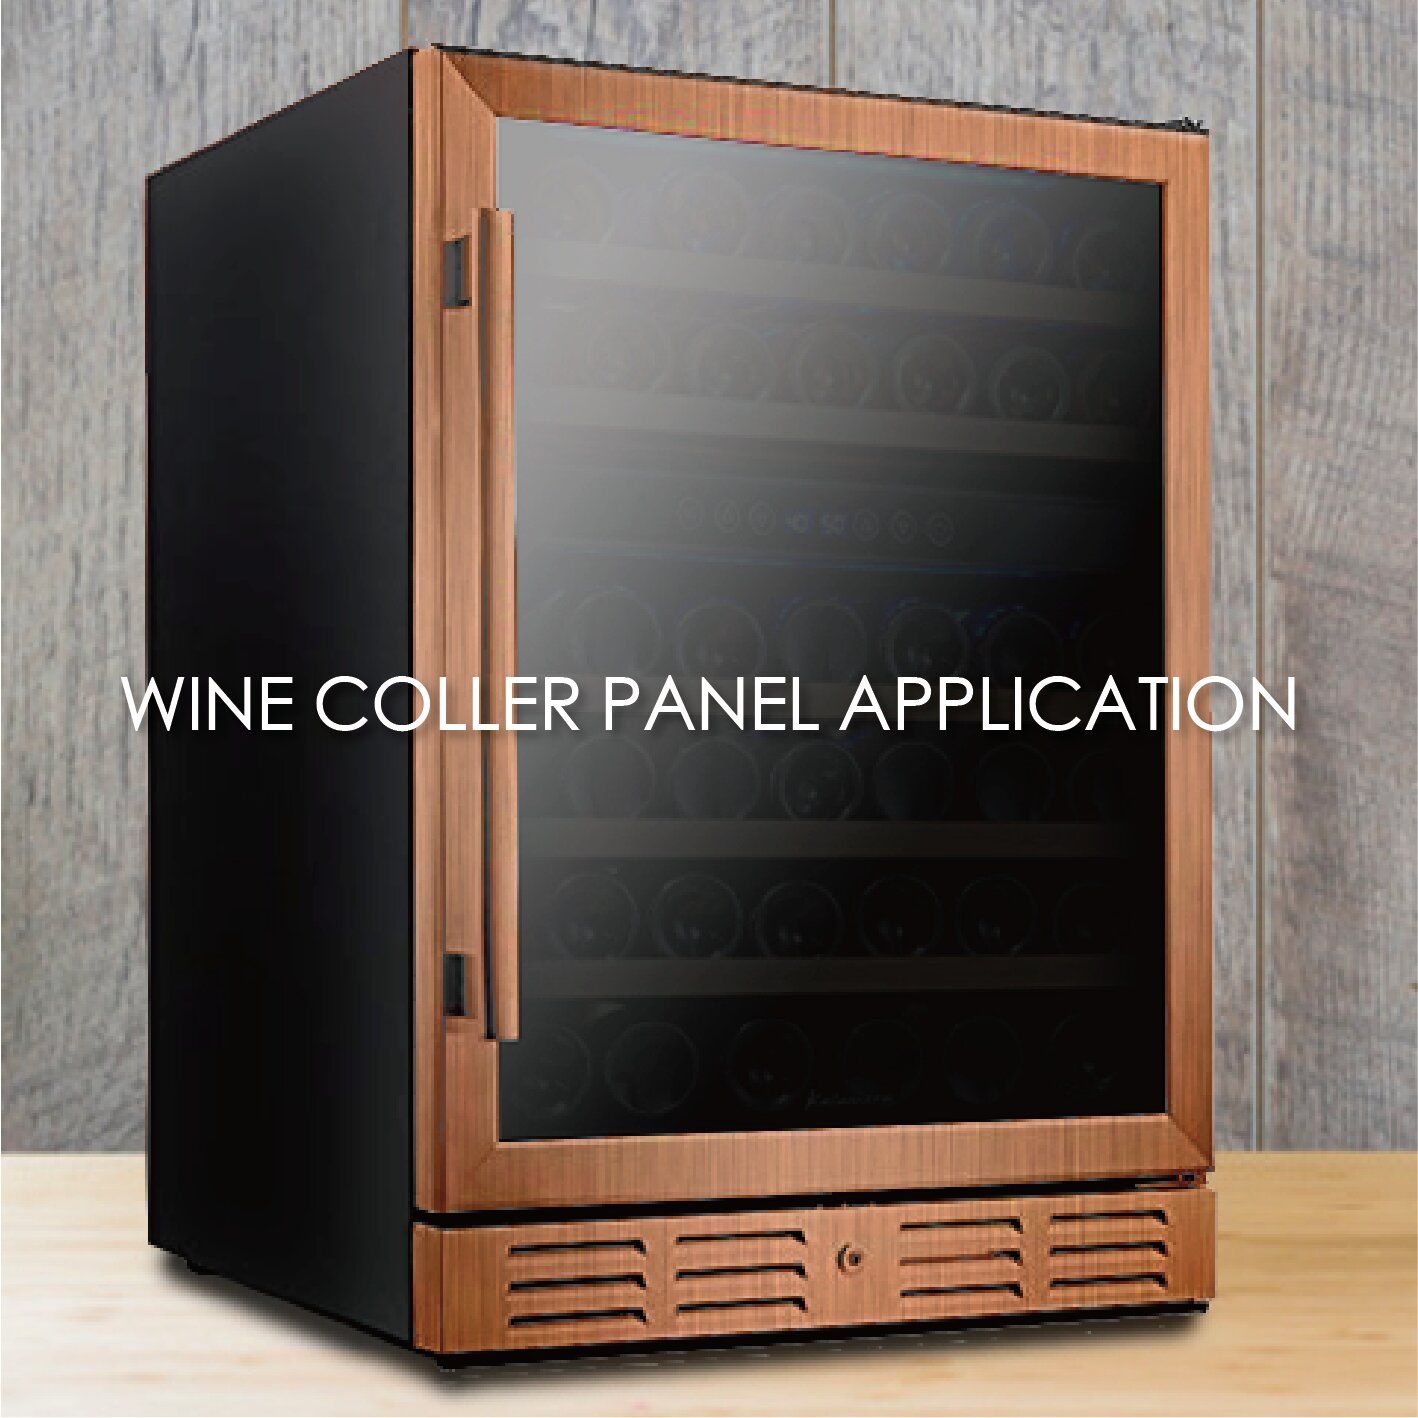 Použití kovu s dřevěným povrchem pro výrobu panelů na vinný chladič může zvýšit estetiku a odolnost